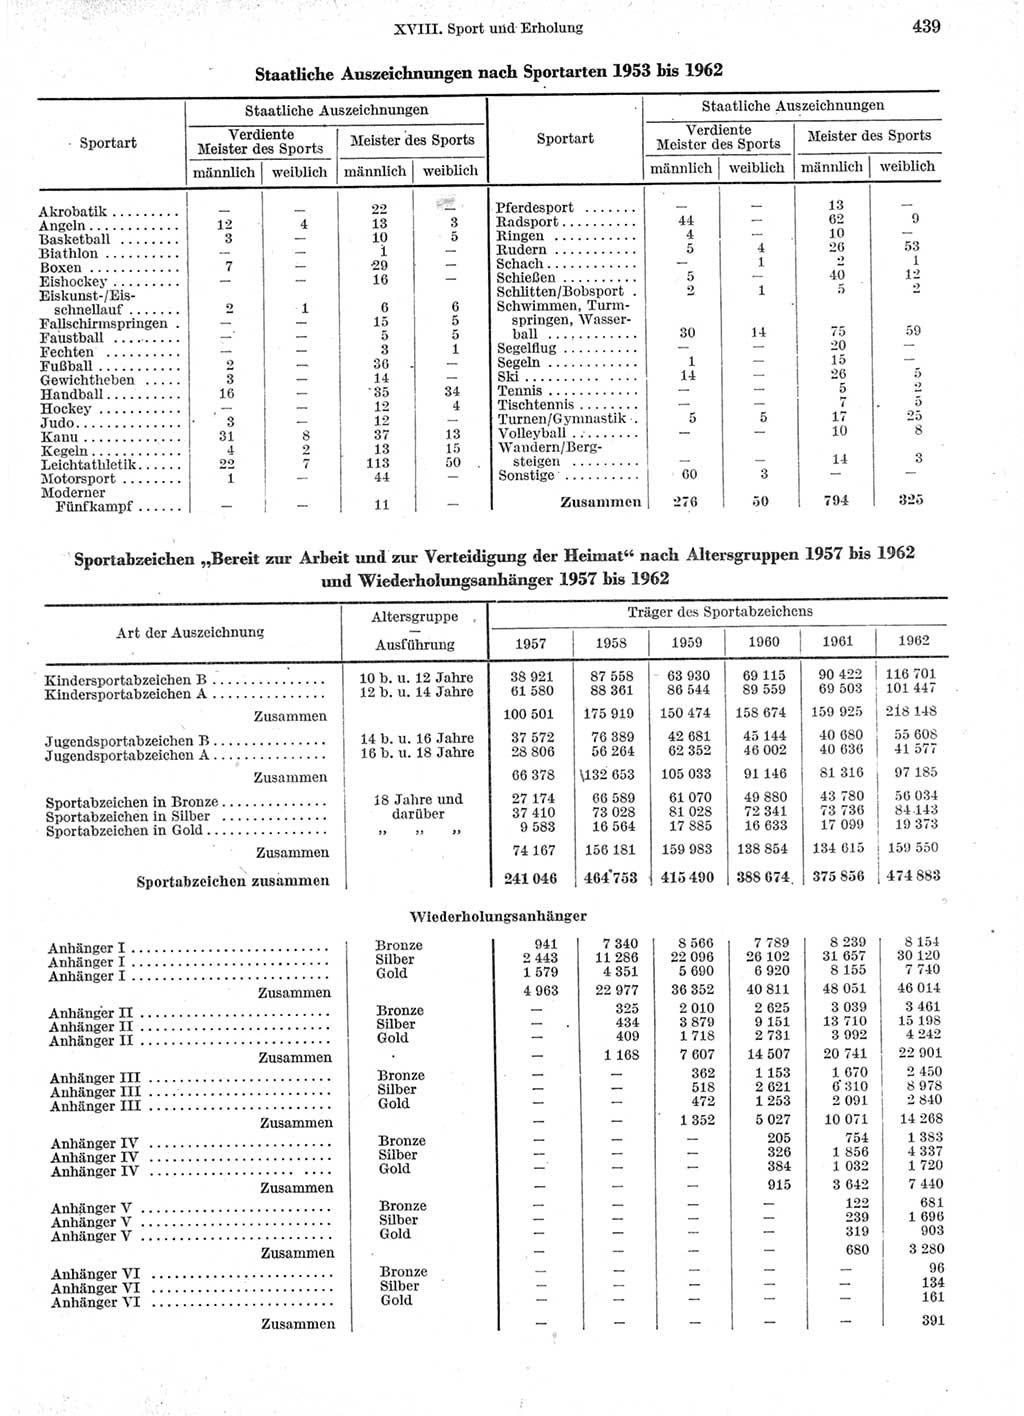 Statistisches Jahrbuch der Deutschen Demokratischen Republik (DDR) 1963, Seite 439 (Stat. Jb. DDR 1963, S. 439)